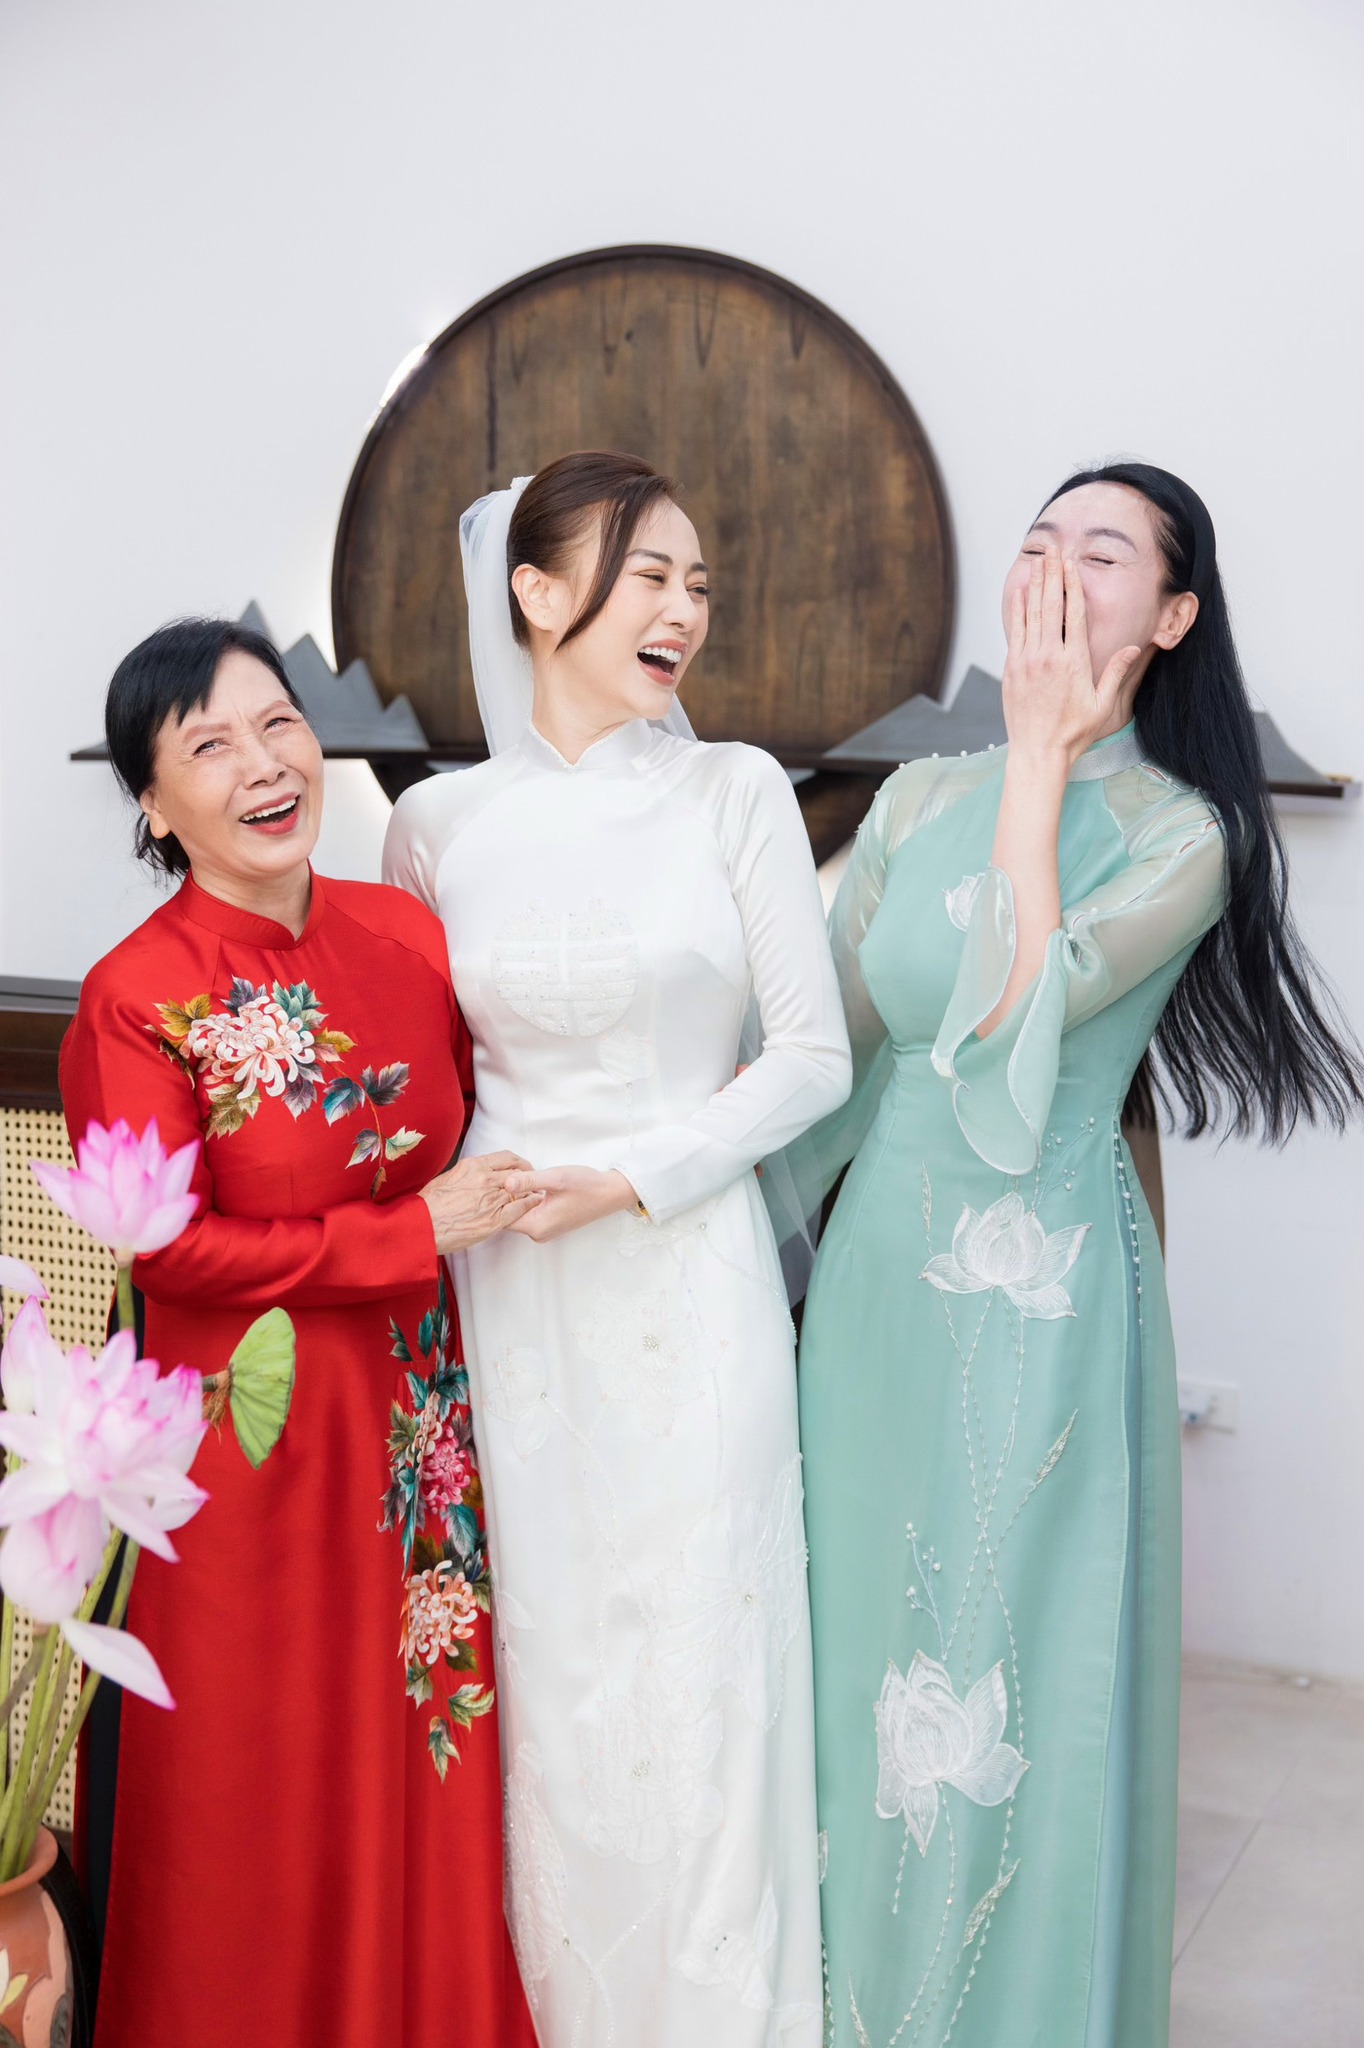 Không phải mẹ đẻ, diễn viên Phương Oanh đi thử áo dài cưới với mẹ Shark Bình và người phụ nữ này - ảnh 2